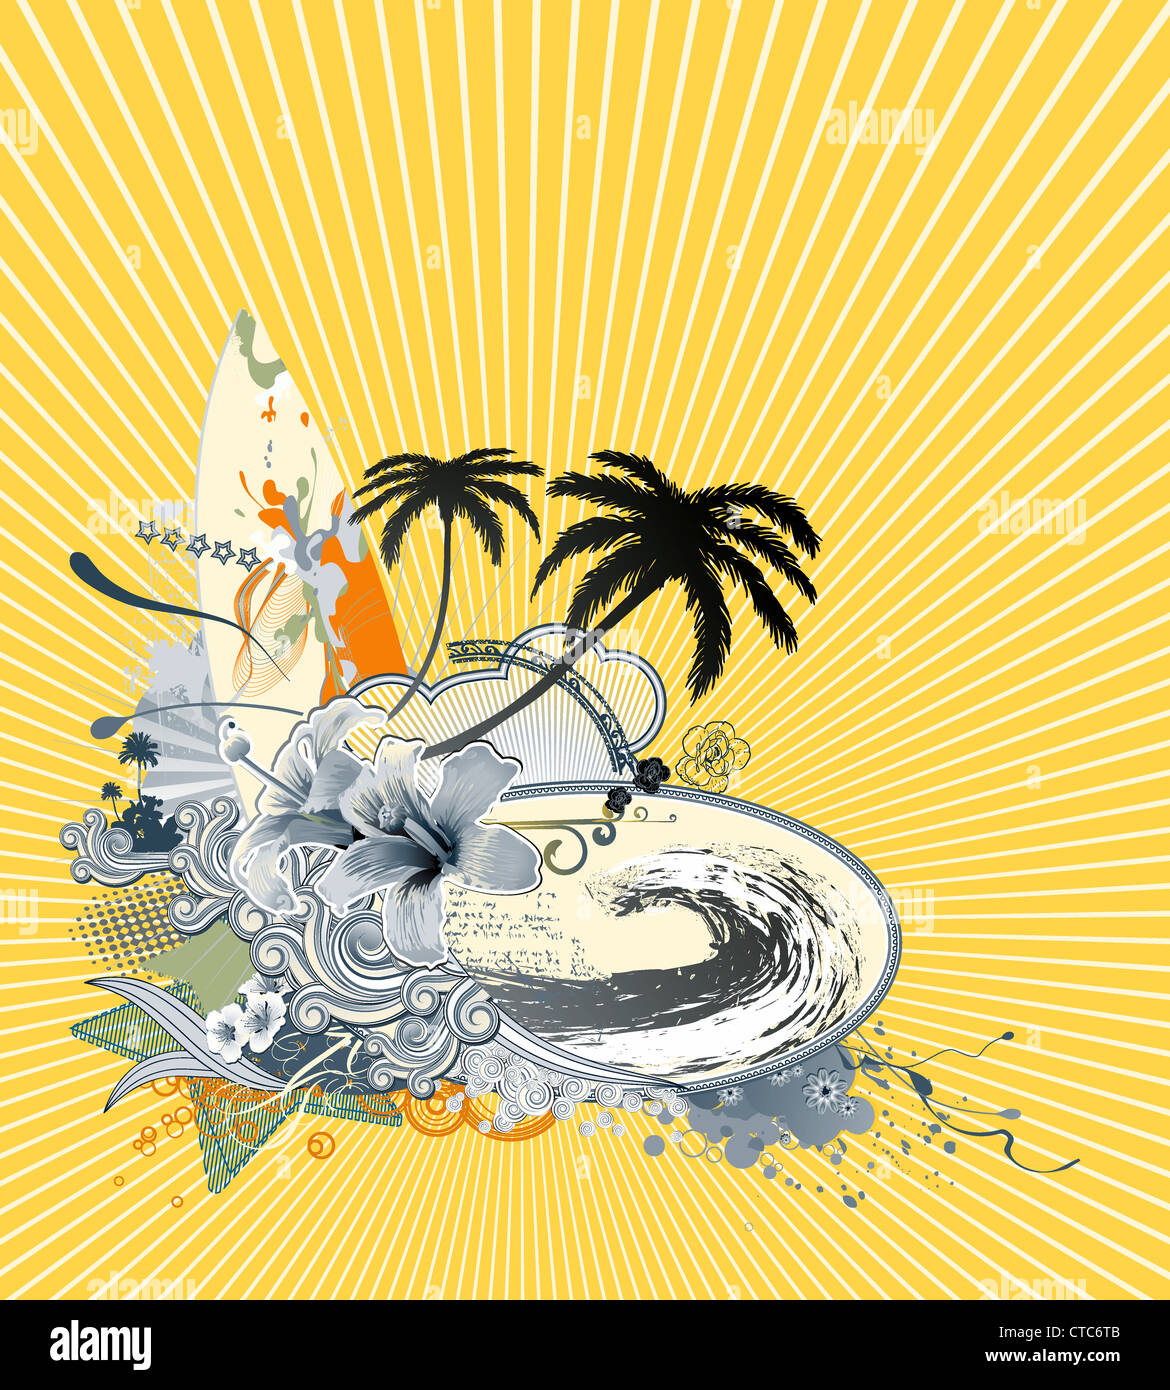 Illustrazione Vettoriale di estate composizione con tavola da surf più grande onda, hibiscus, palme silhouette e ricci strisce retrò Foto Stock